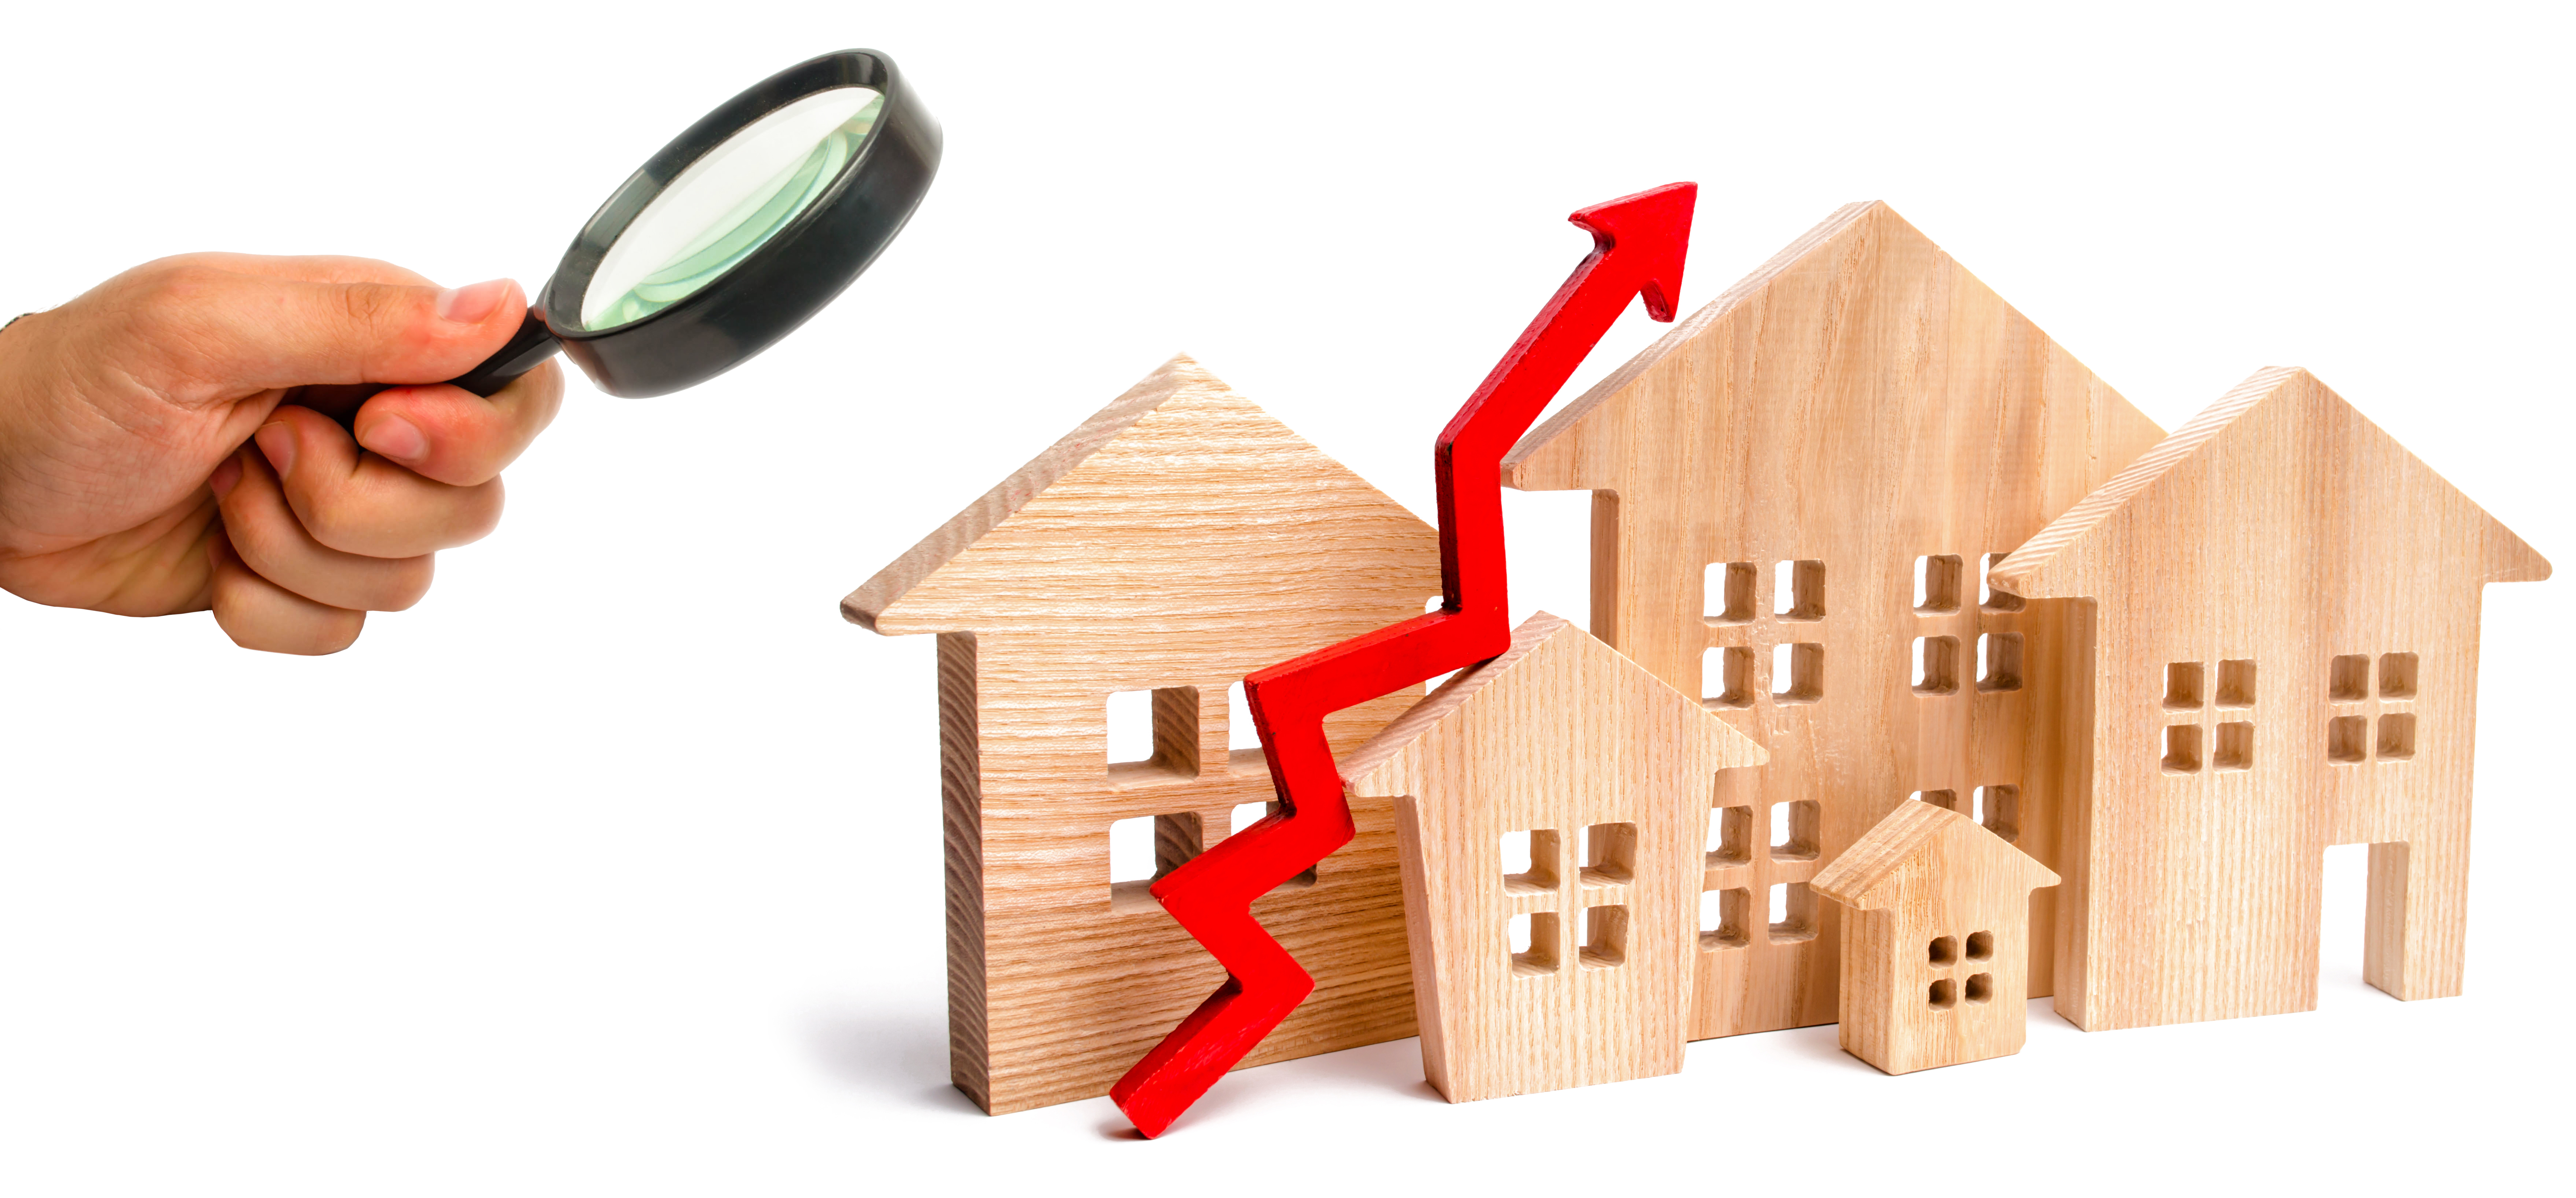 Недвижимый предложение. Ипотека арт. Внимание! Стоимость недвижимости увеличивается!. Дом с красной стрелкой рост продаж. Demand for real Estate value.